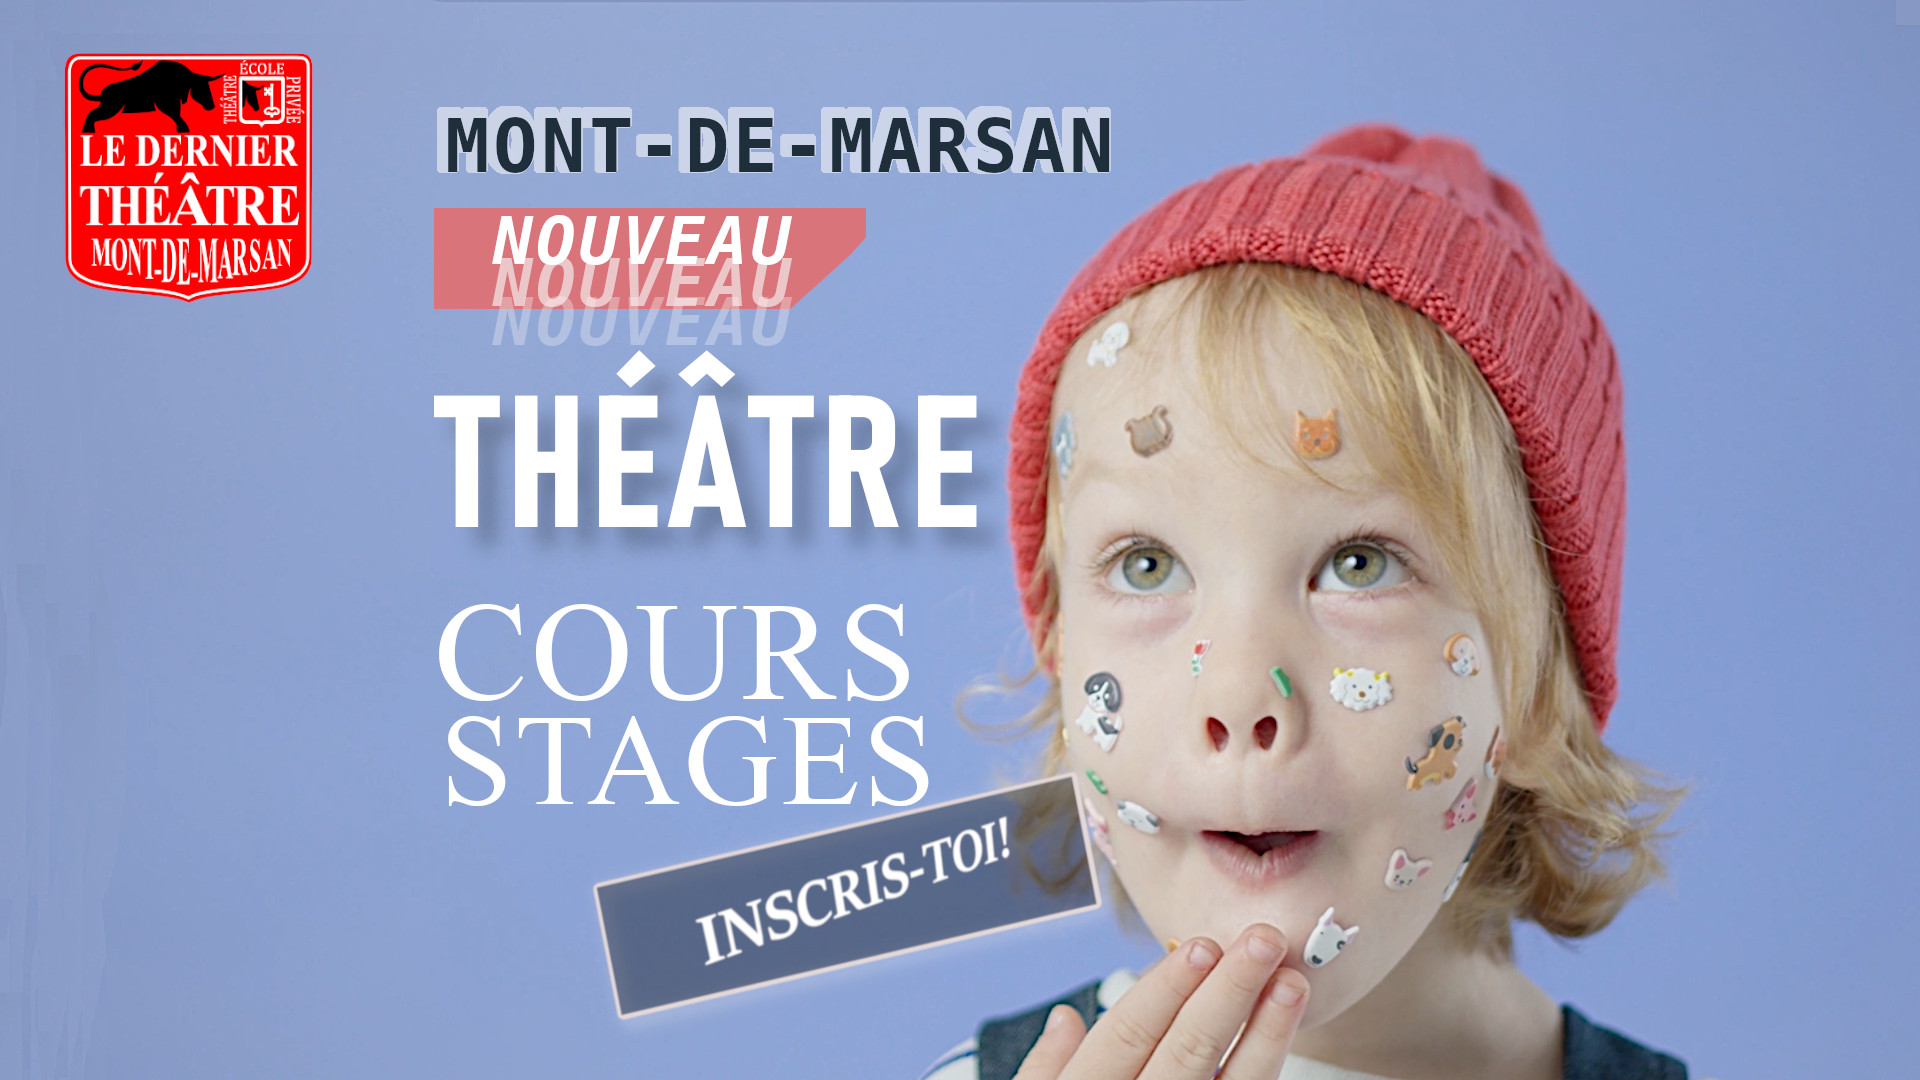 Ecole de théâtre, Le dernier théâtre, Mont-de-Marsan, L'anima